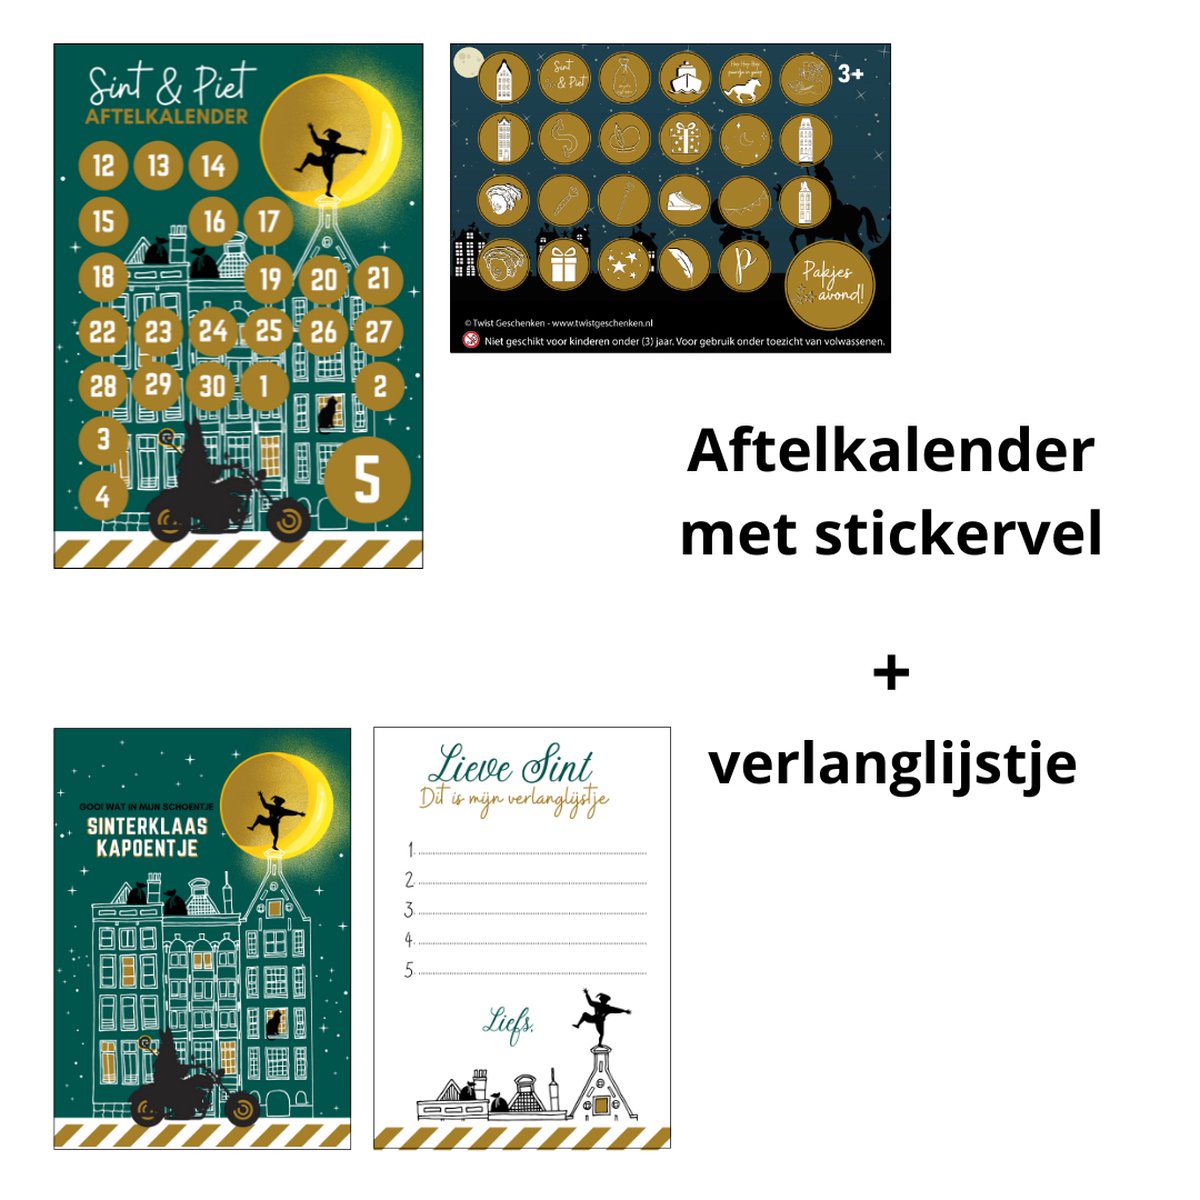 Sinterklaas aftelkalender met stickervel + verlanglijstje - sinterklaas - aftelkalender - verlanglijstje - schoentje zetten - sinterklaas kalender